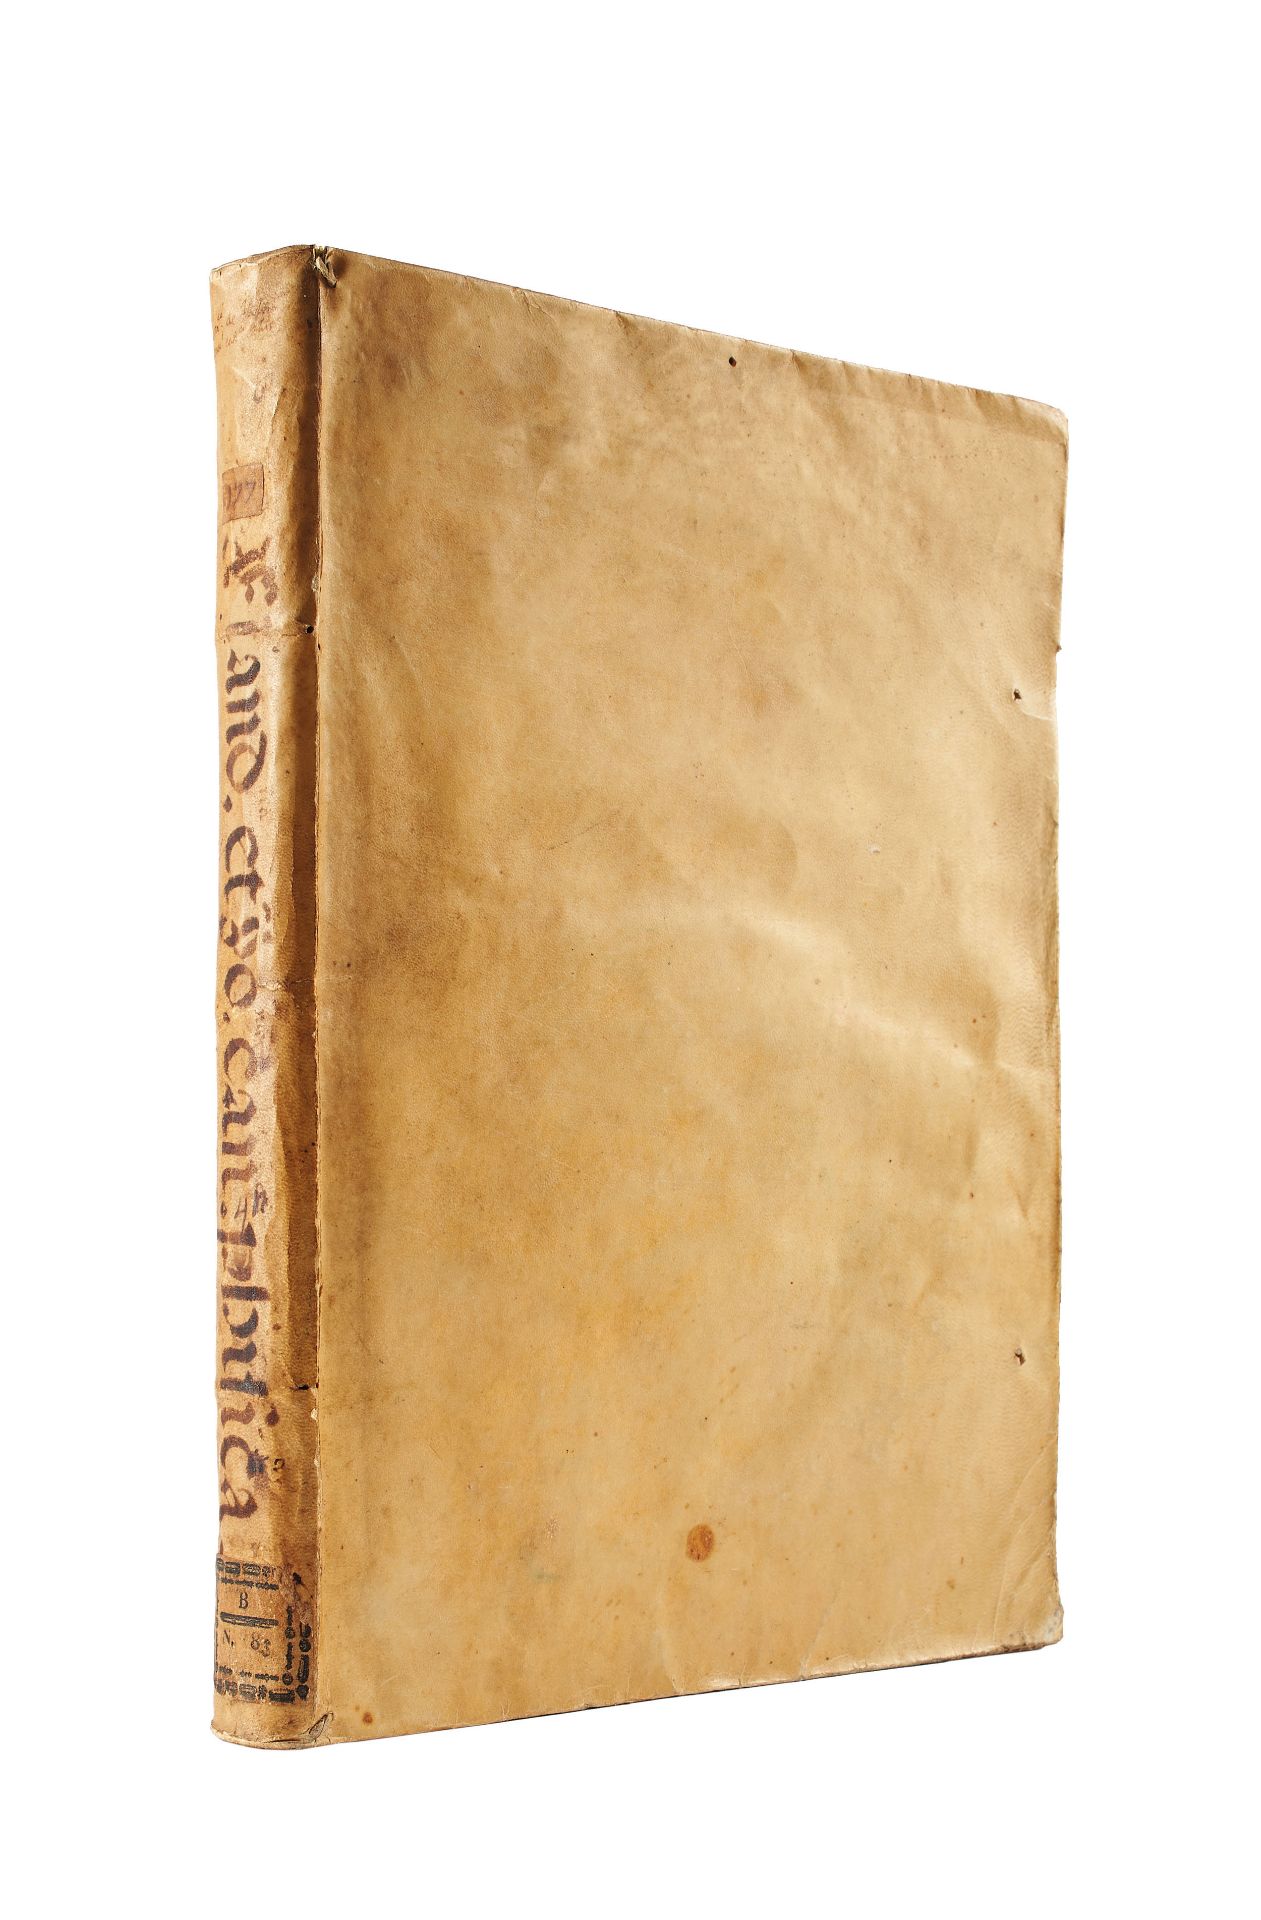 [ARISTOTLE] DOMINICUS DE FLANDRA (1425-1500). Commentaria super libris posteriorum Aristotelis, - Image 2 of 3